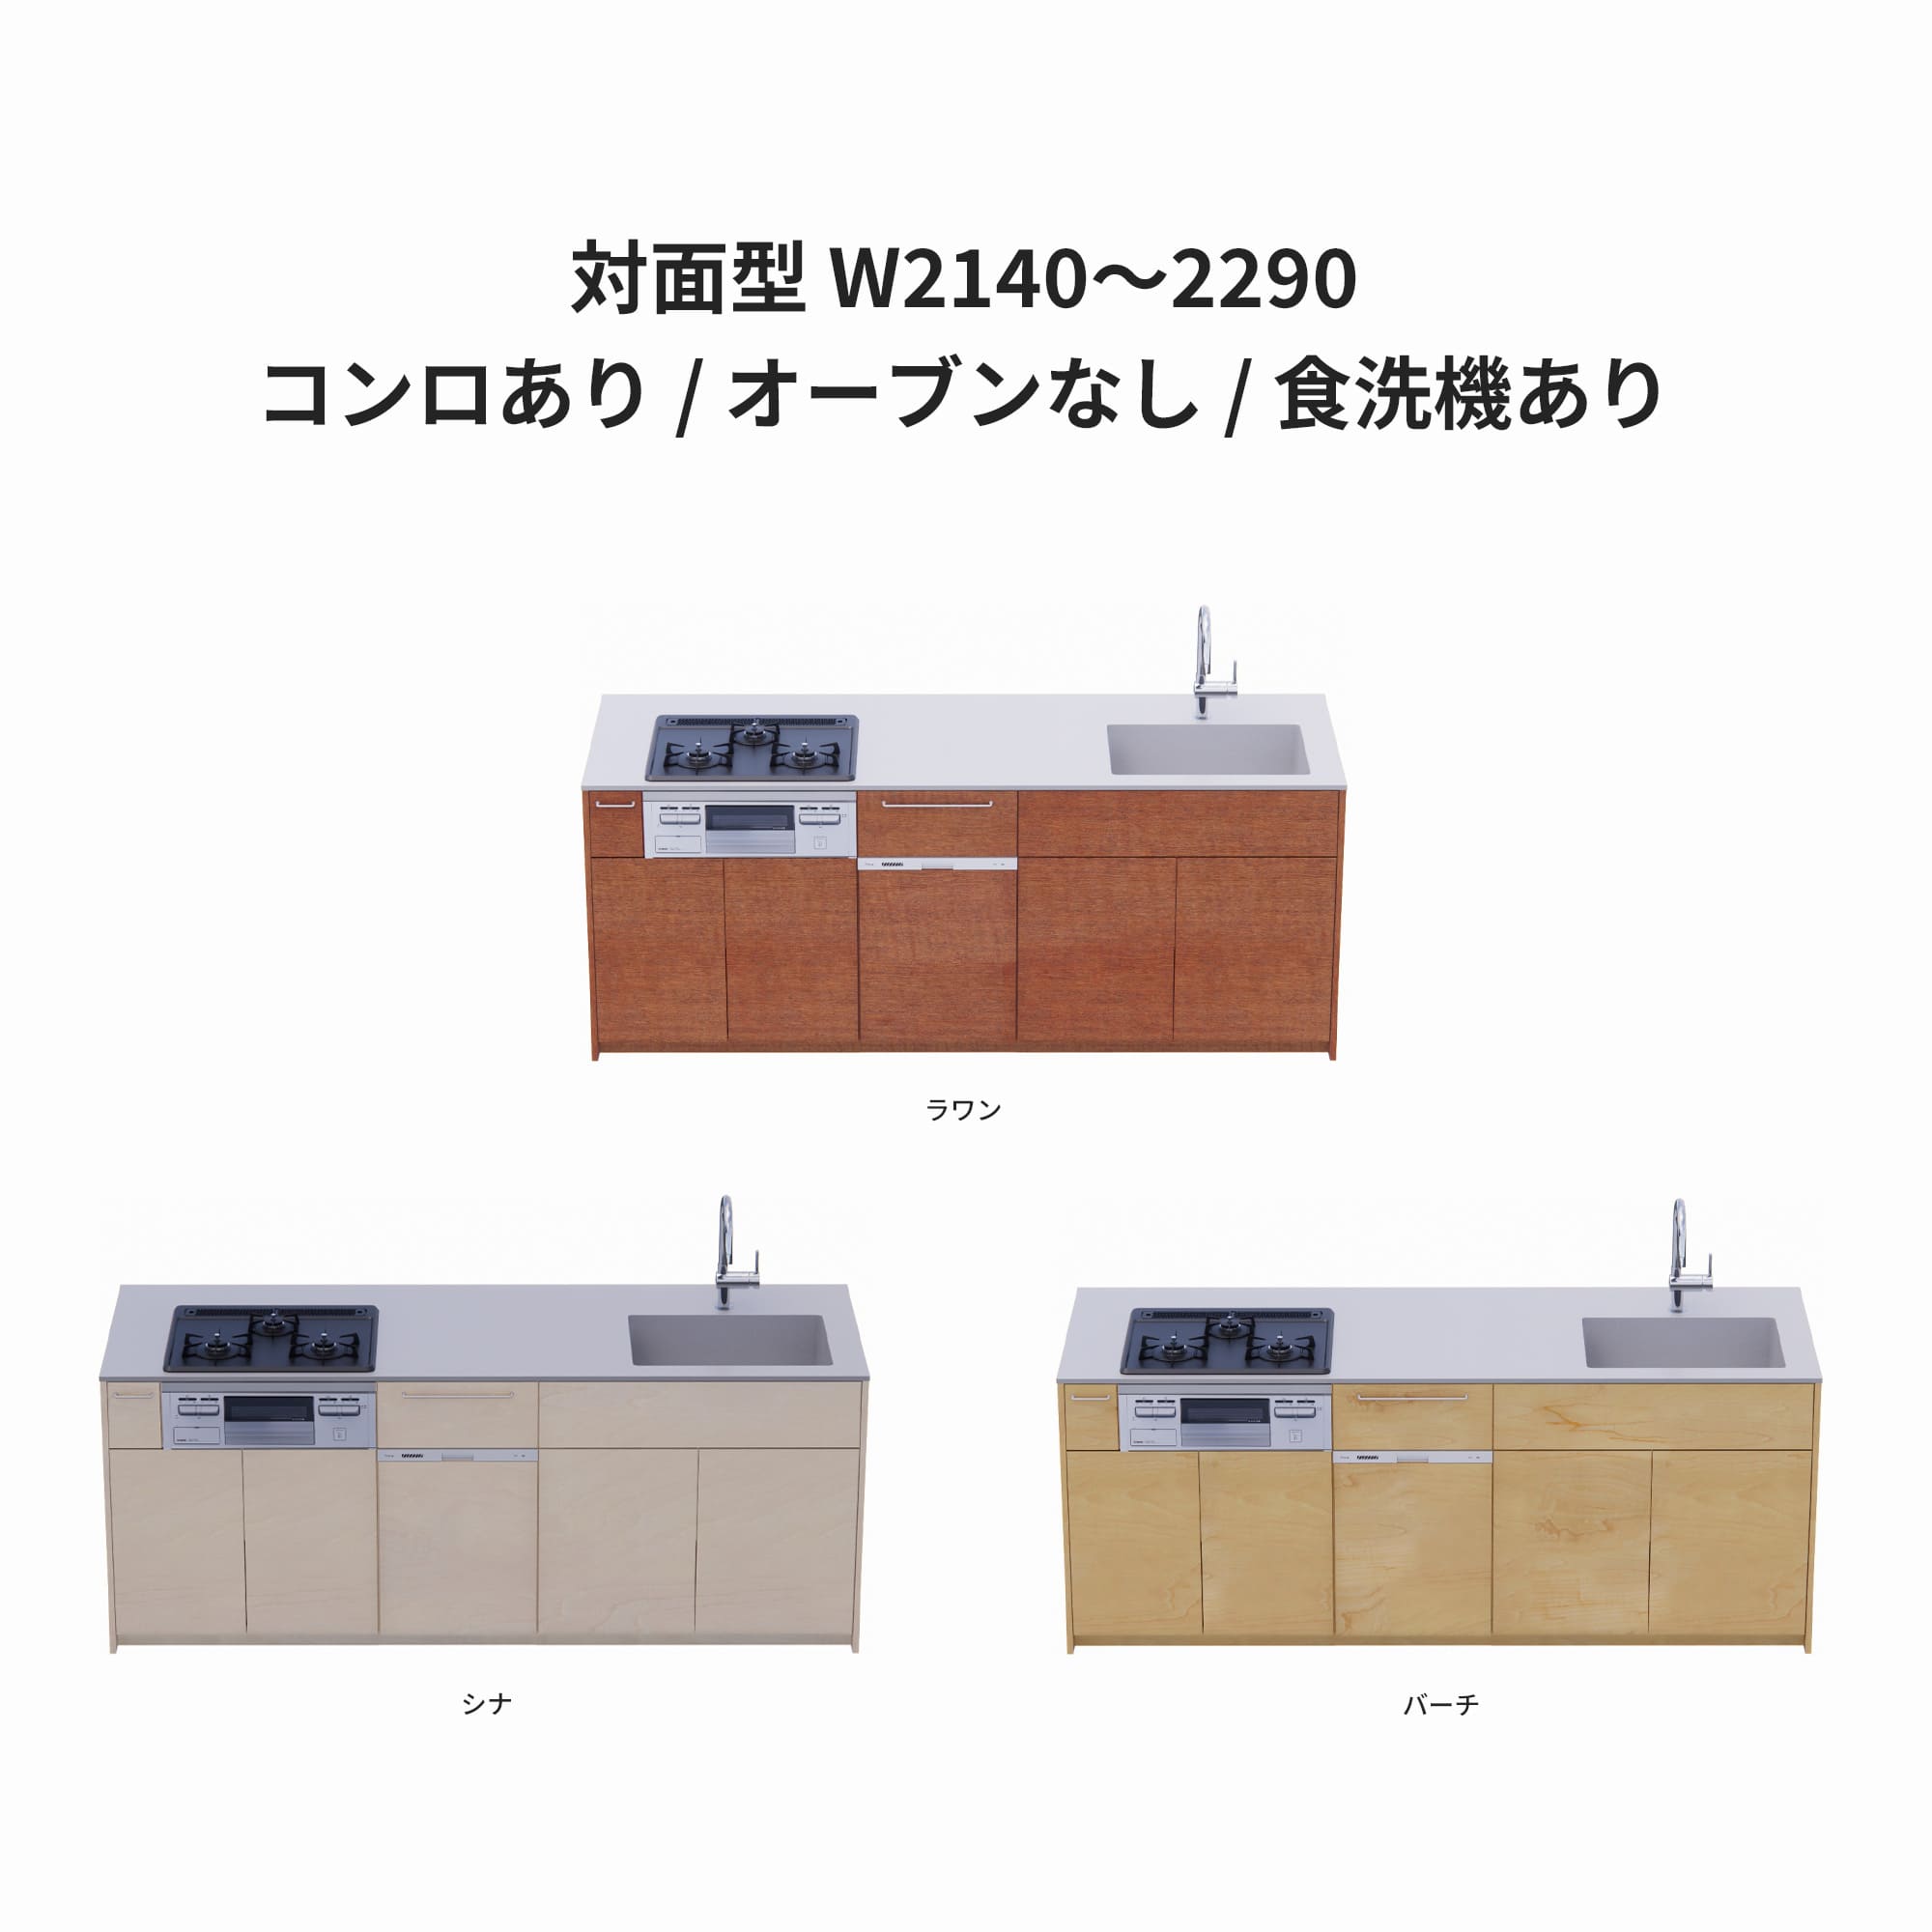 木製システムキッチン 対面型 W2140～2290・コンロあり / オーブンなし / 食洗機あり KB-KC022-38-G183 ラワン・シナ・バーチが選択できます